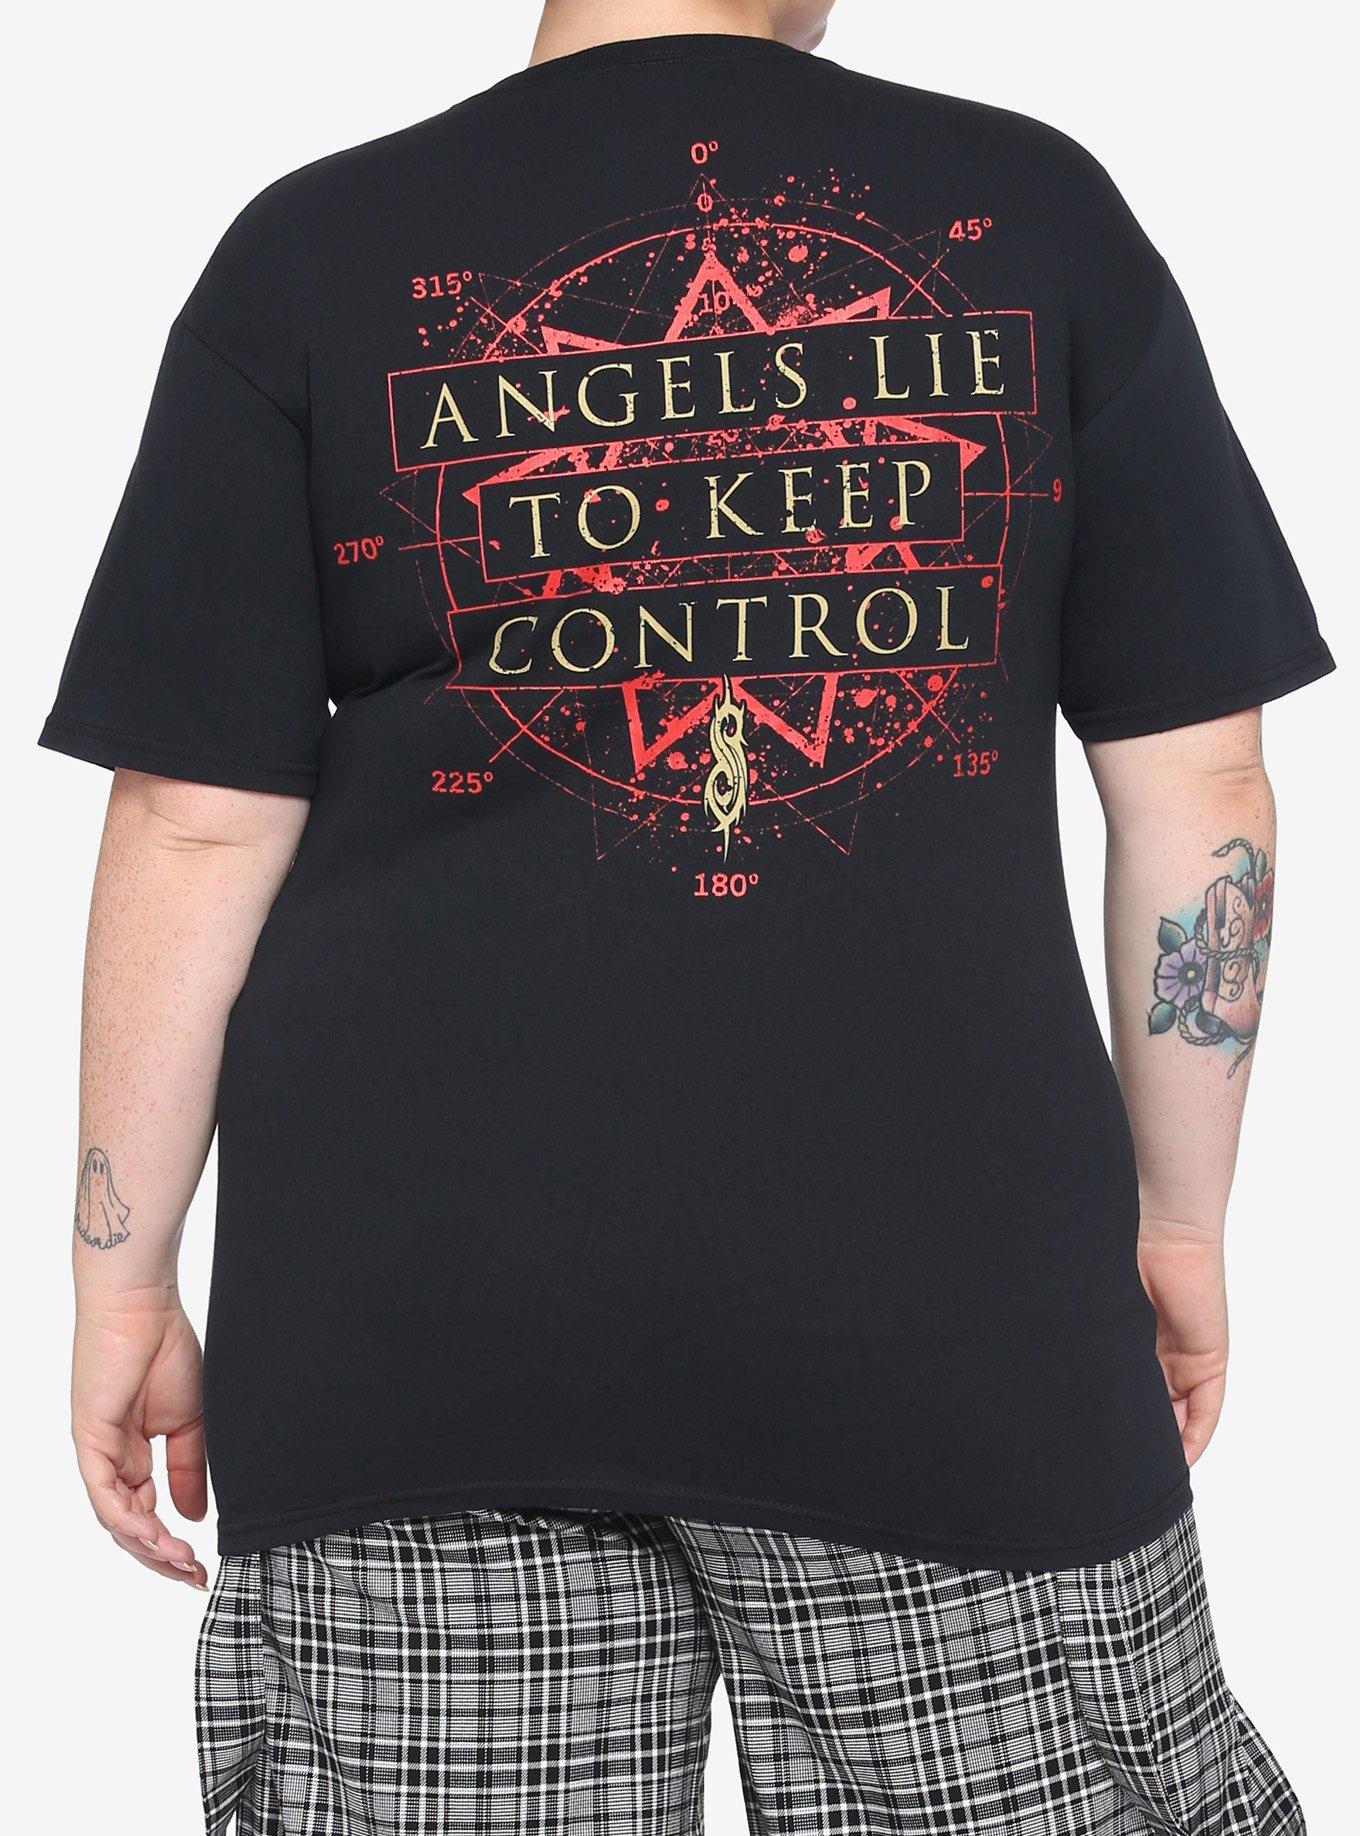 Slipknot All Hope Is Gone Snuff Girls T-Shirt Plus Size, BLACK, alternate